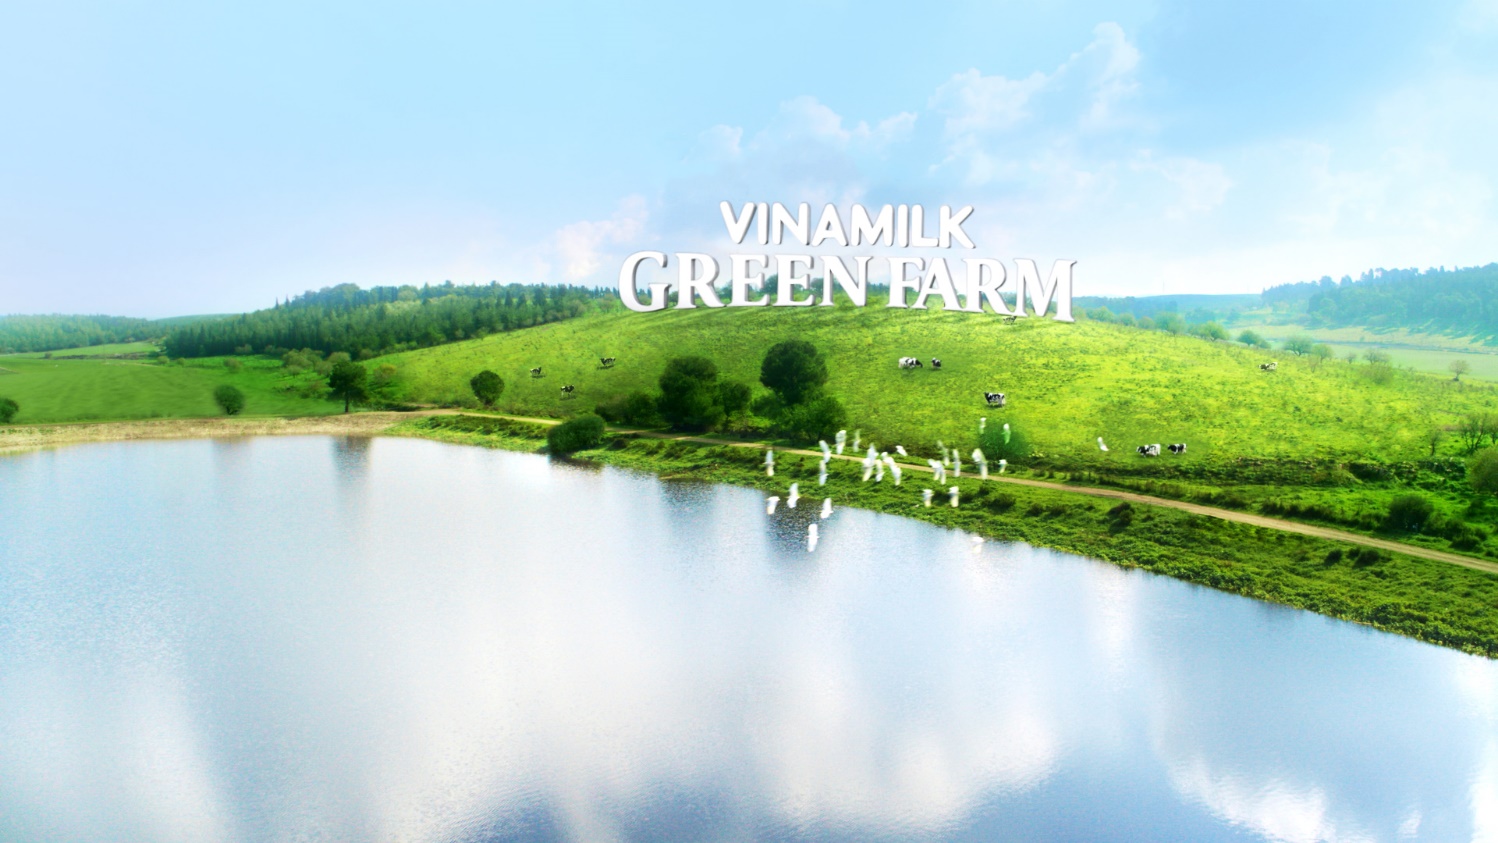 Sữa tươi Green Farm mới-dòng sản phẩm được lòng người tiêu dùng nhờ yếu tố thiên nhiên - Ảnh 2.